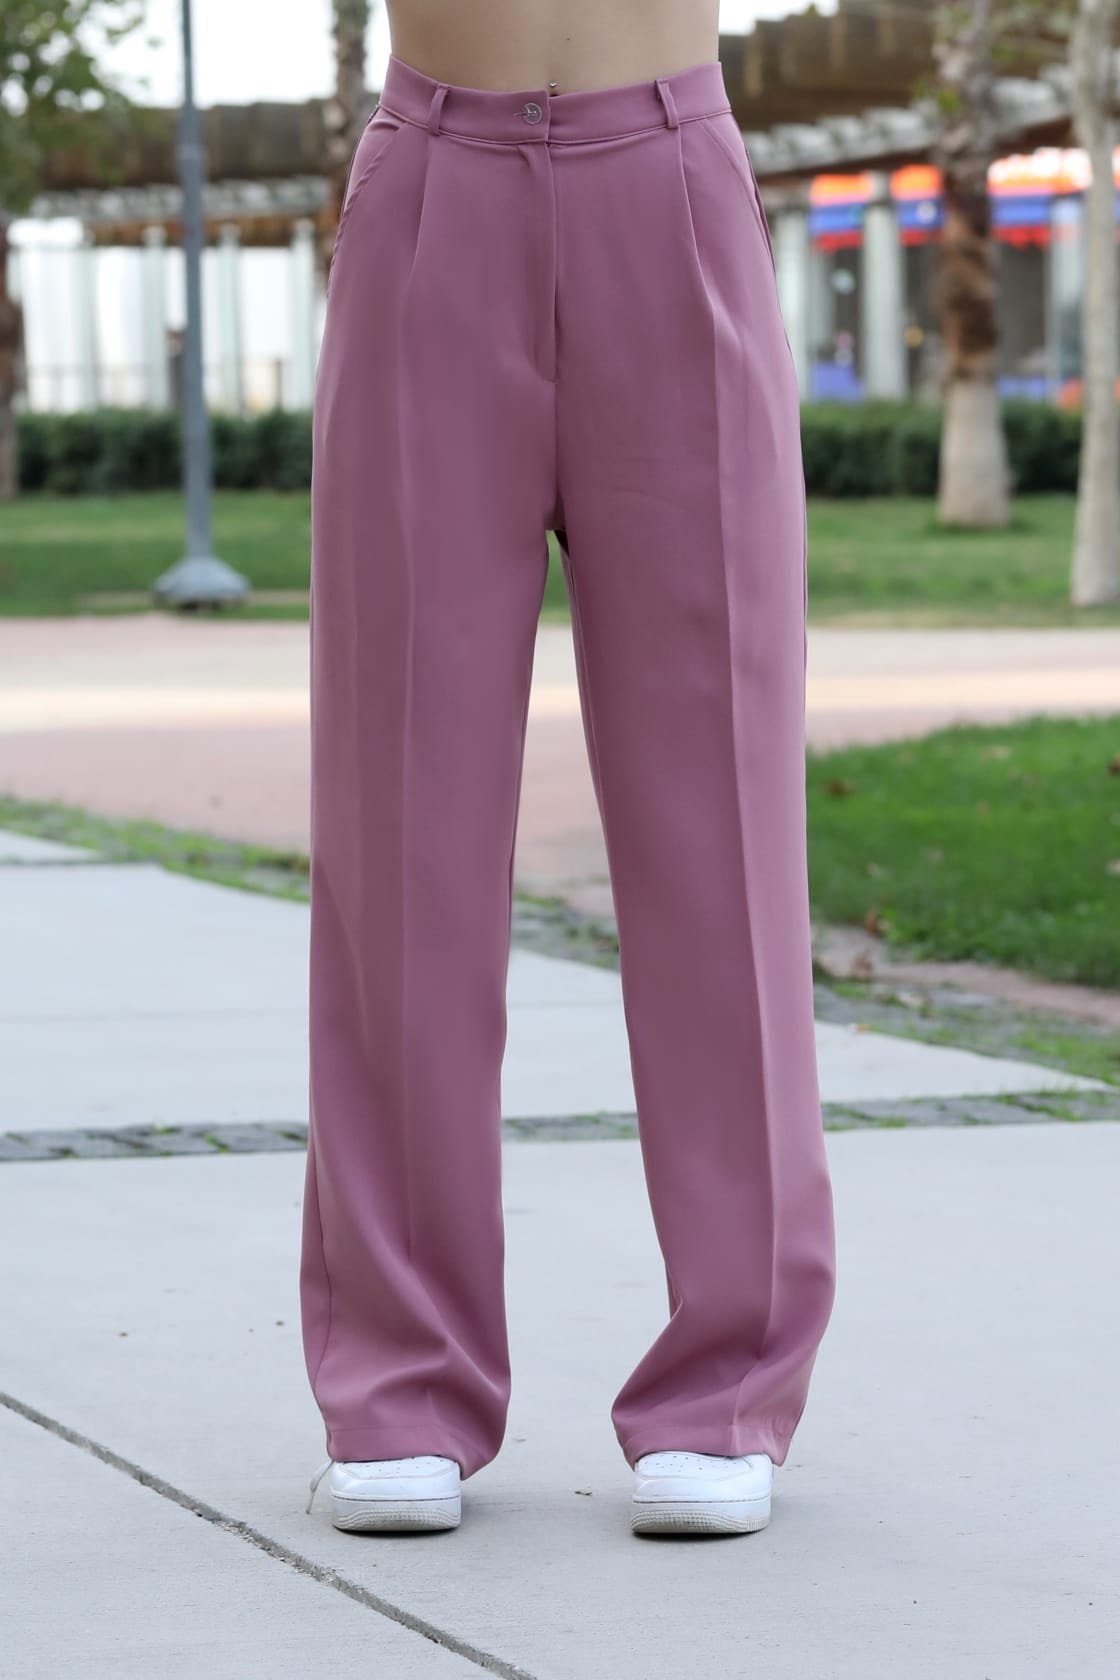 Rosa Marlenehosen für Damen kaufen » Pinke Marlenehosen | OTTO